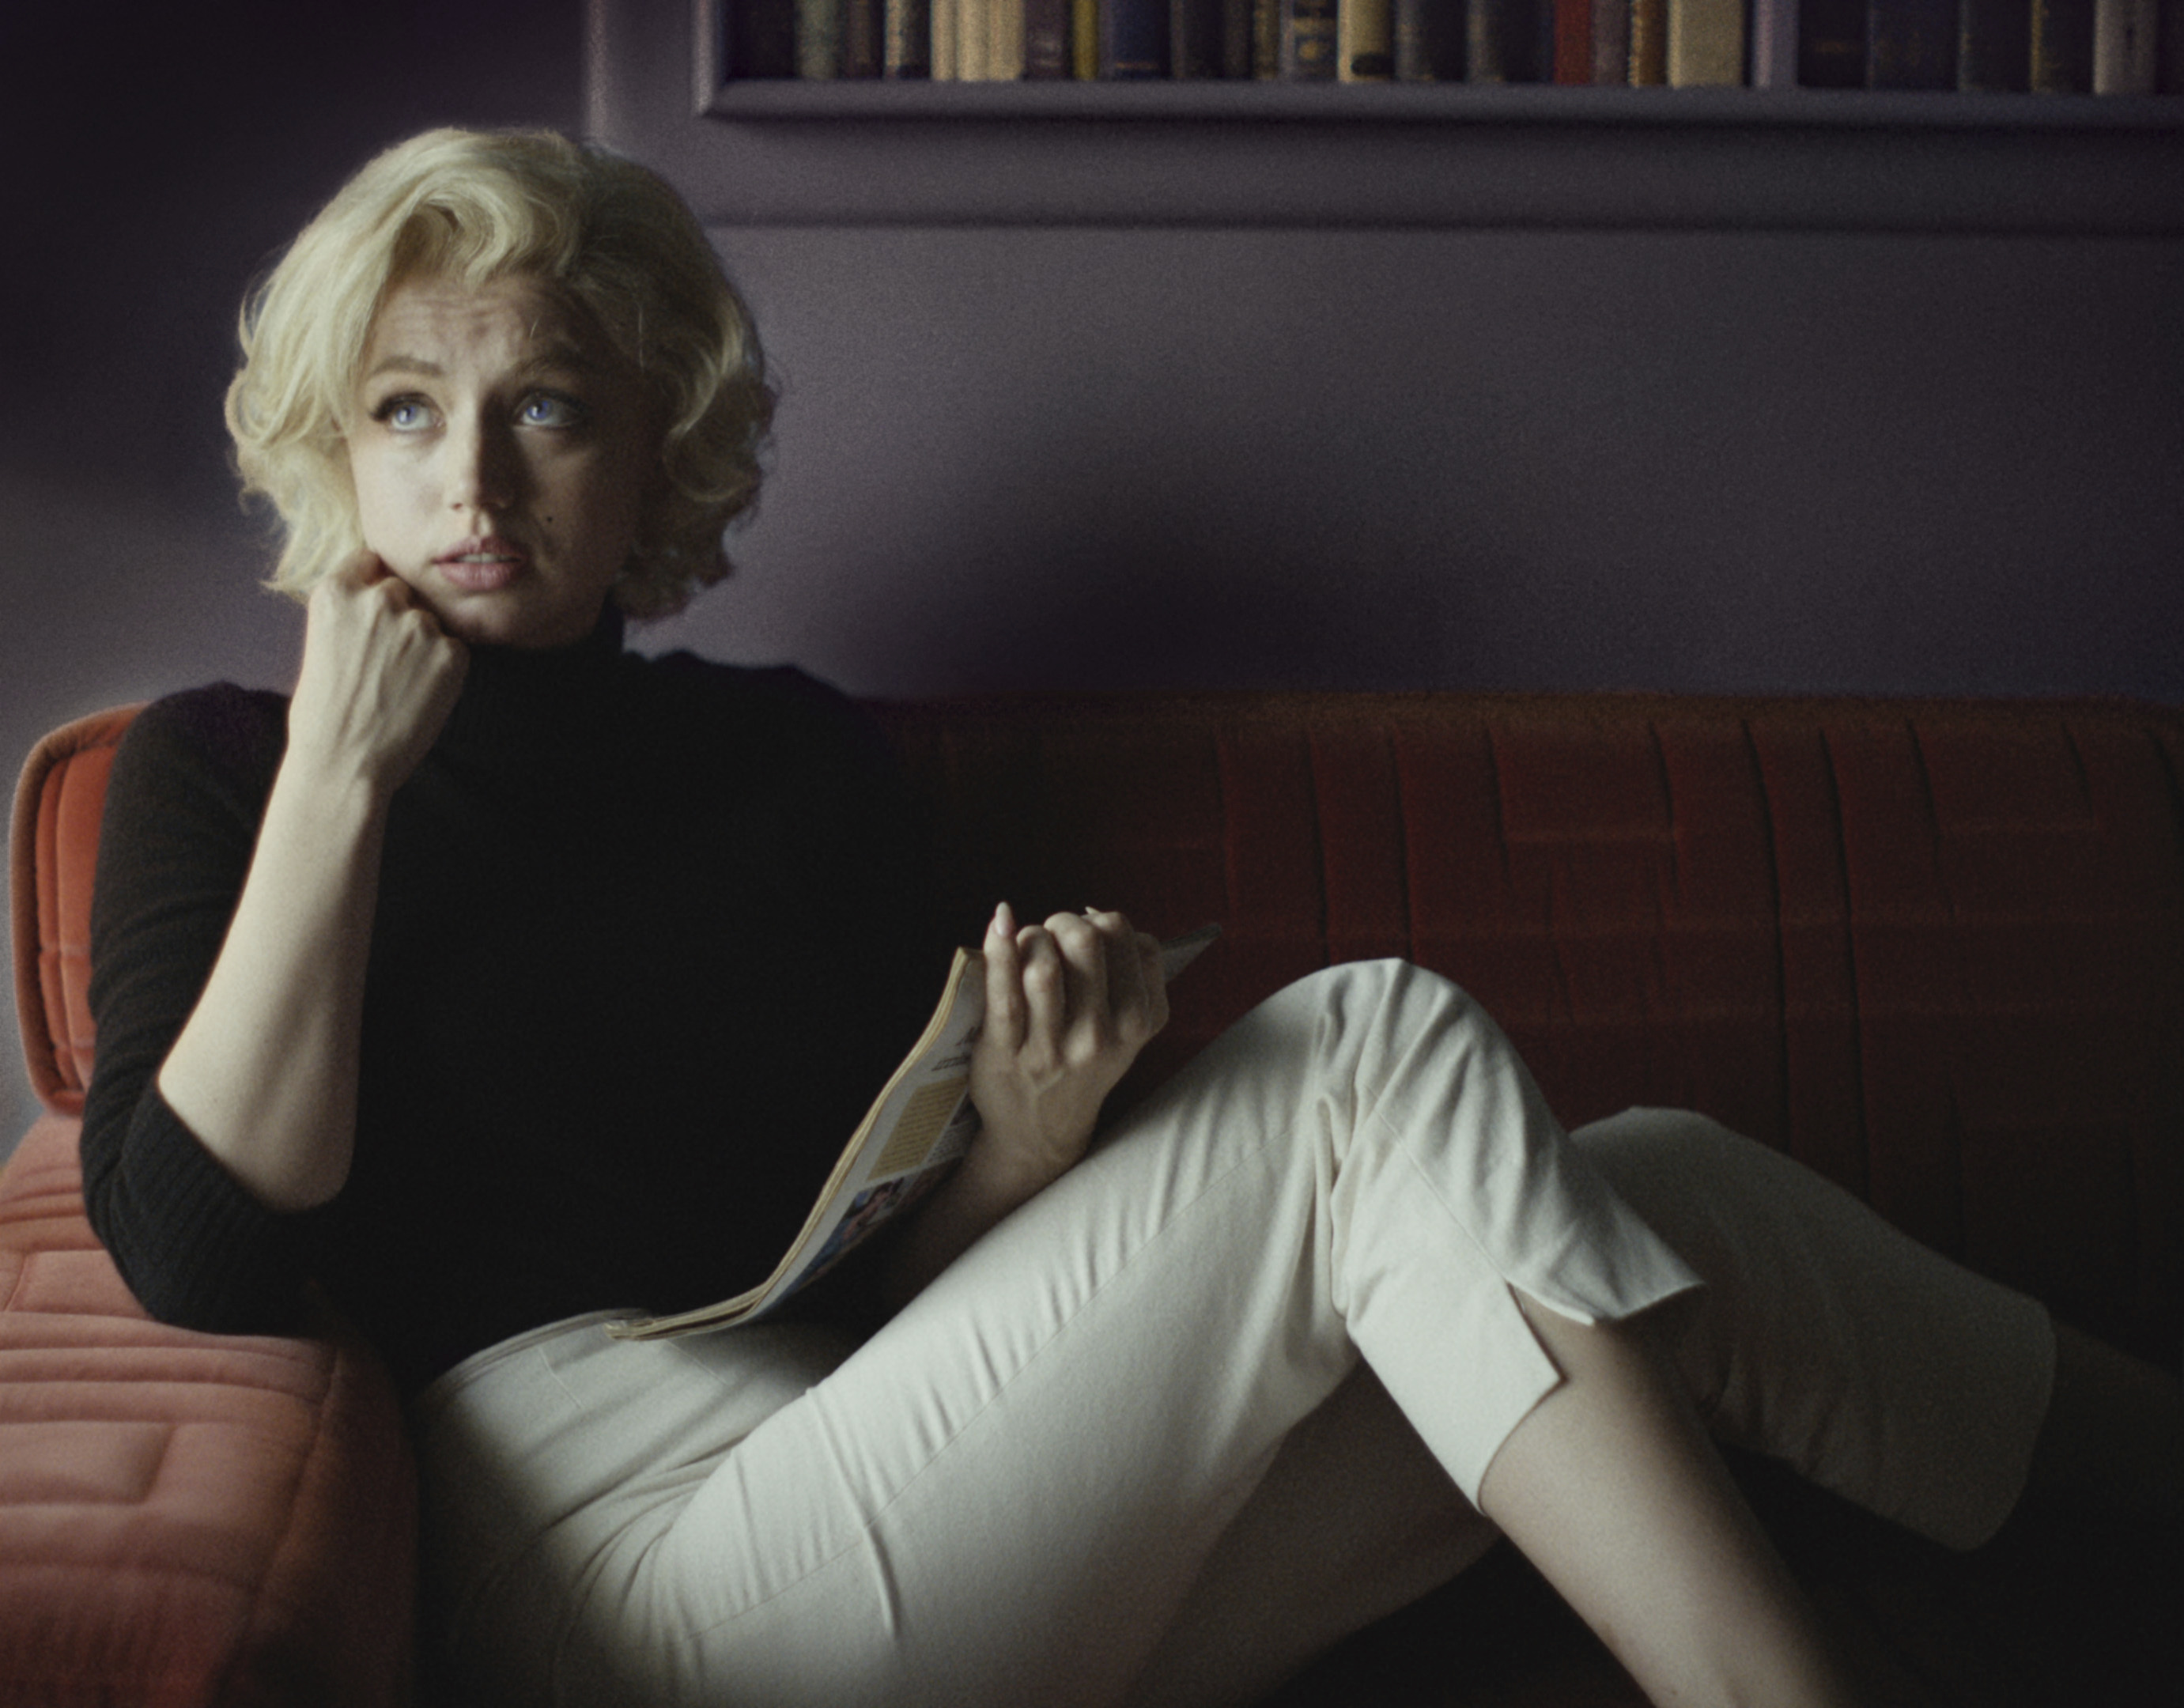 Imagen de la película "Blonde".